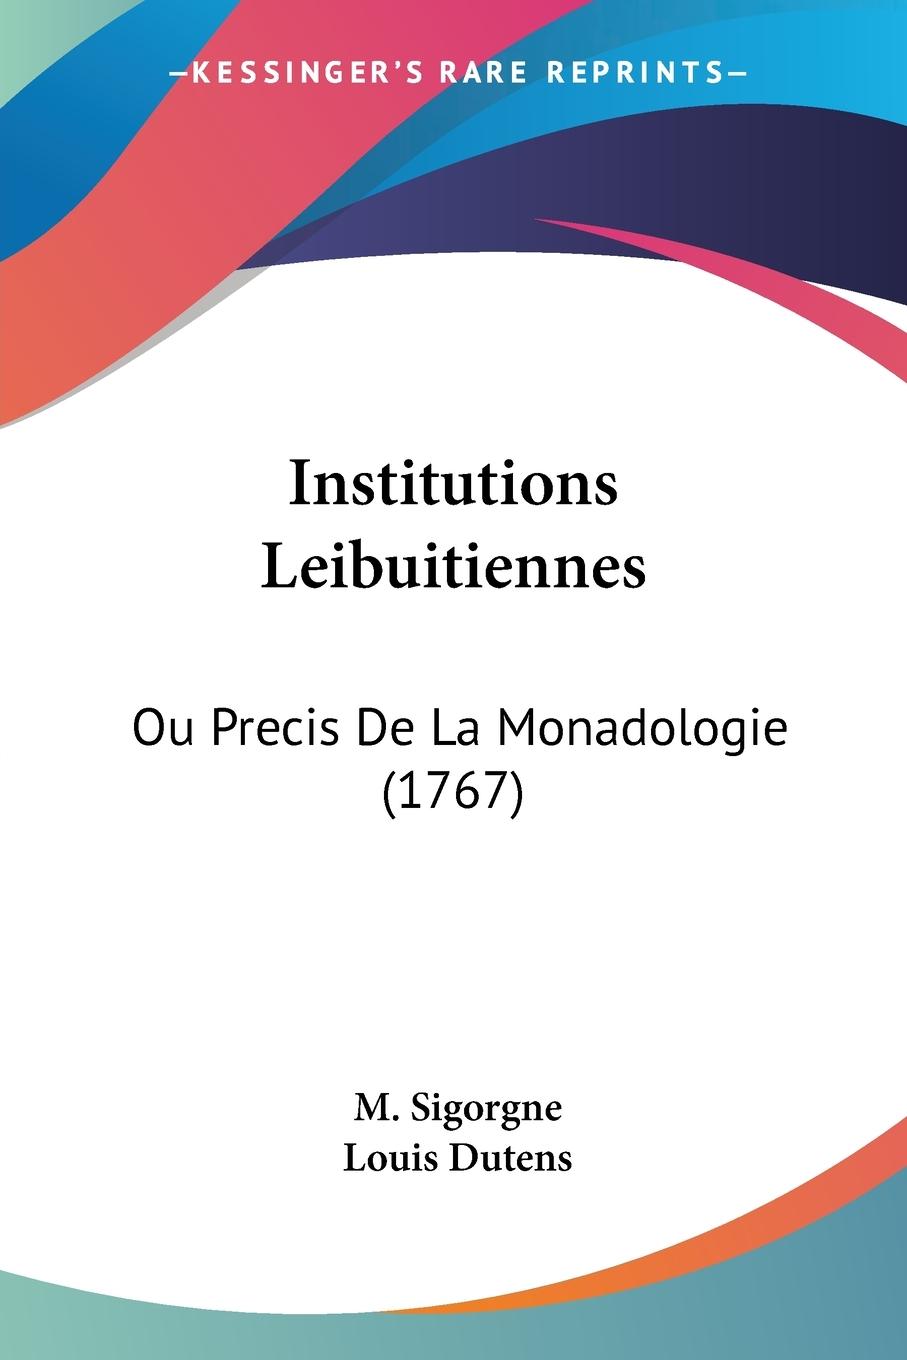 Institutions Leibuitiennes - Sigorgne, M. Dutens, Louis